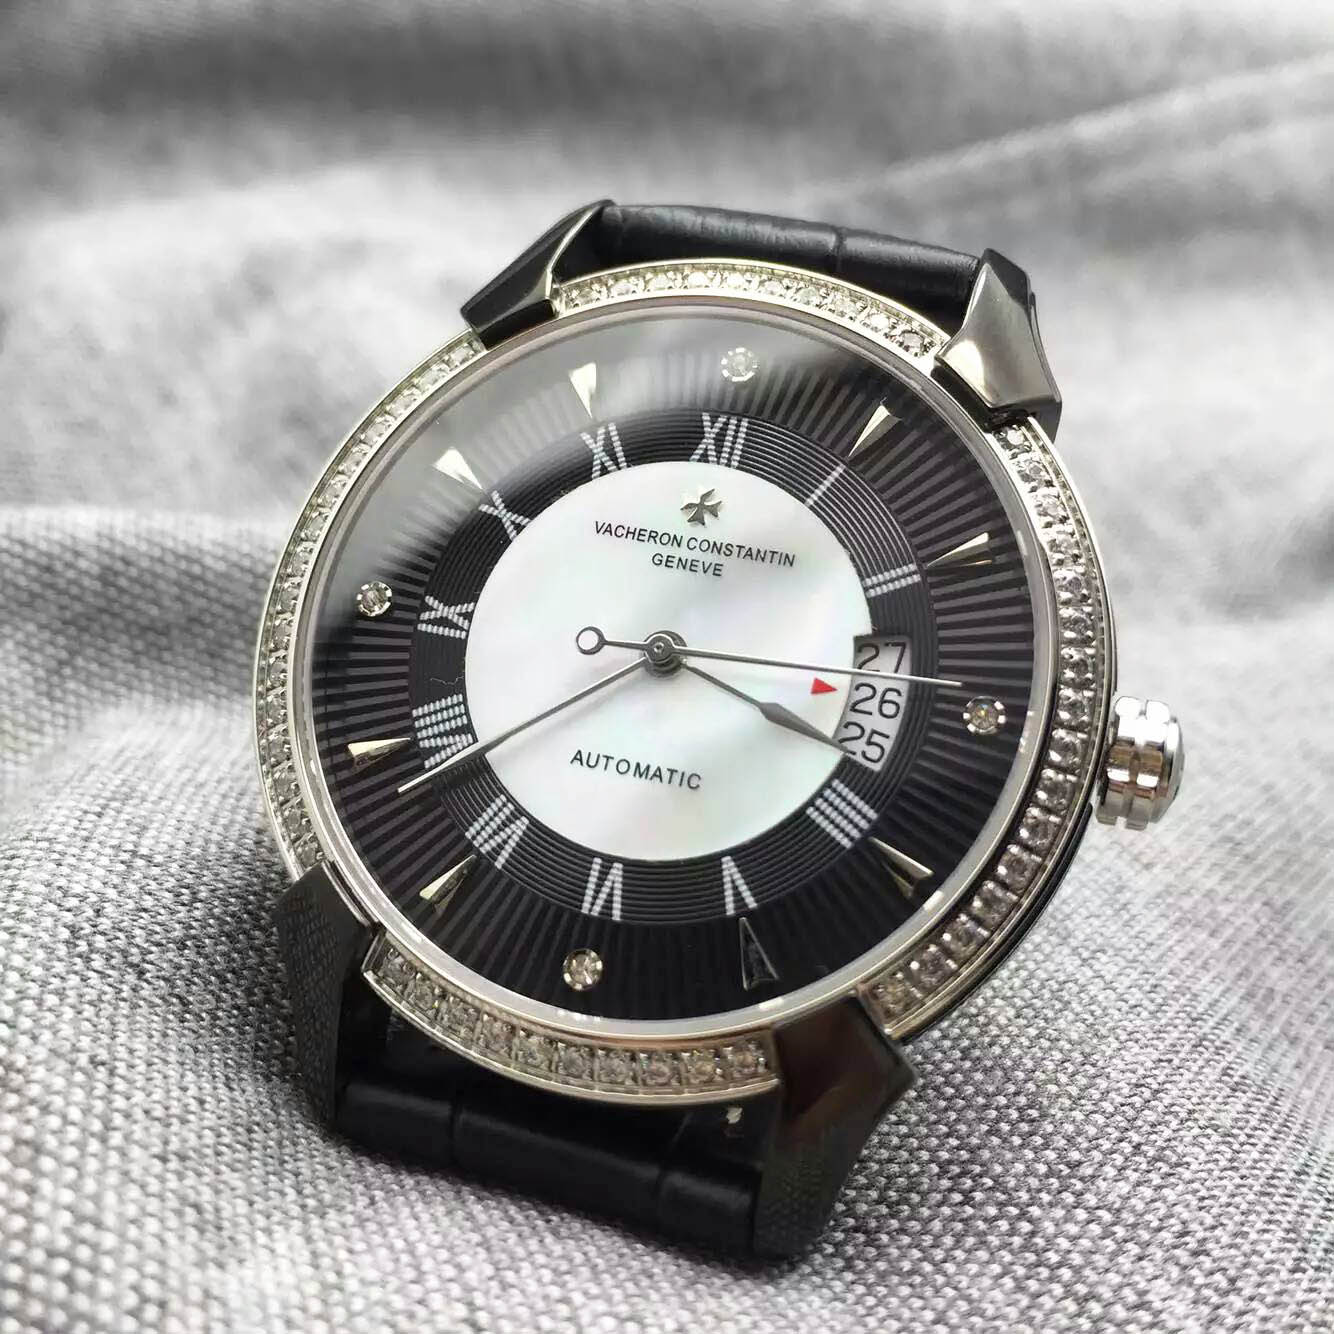 2015年度江詩丹頓全新款式腕錶再度來襲 搭載2824雕花機芯